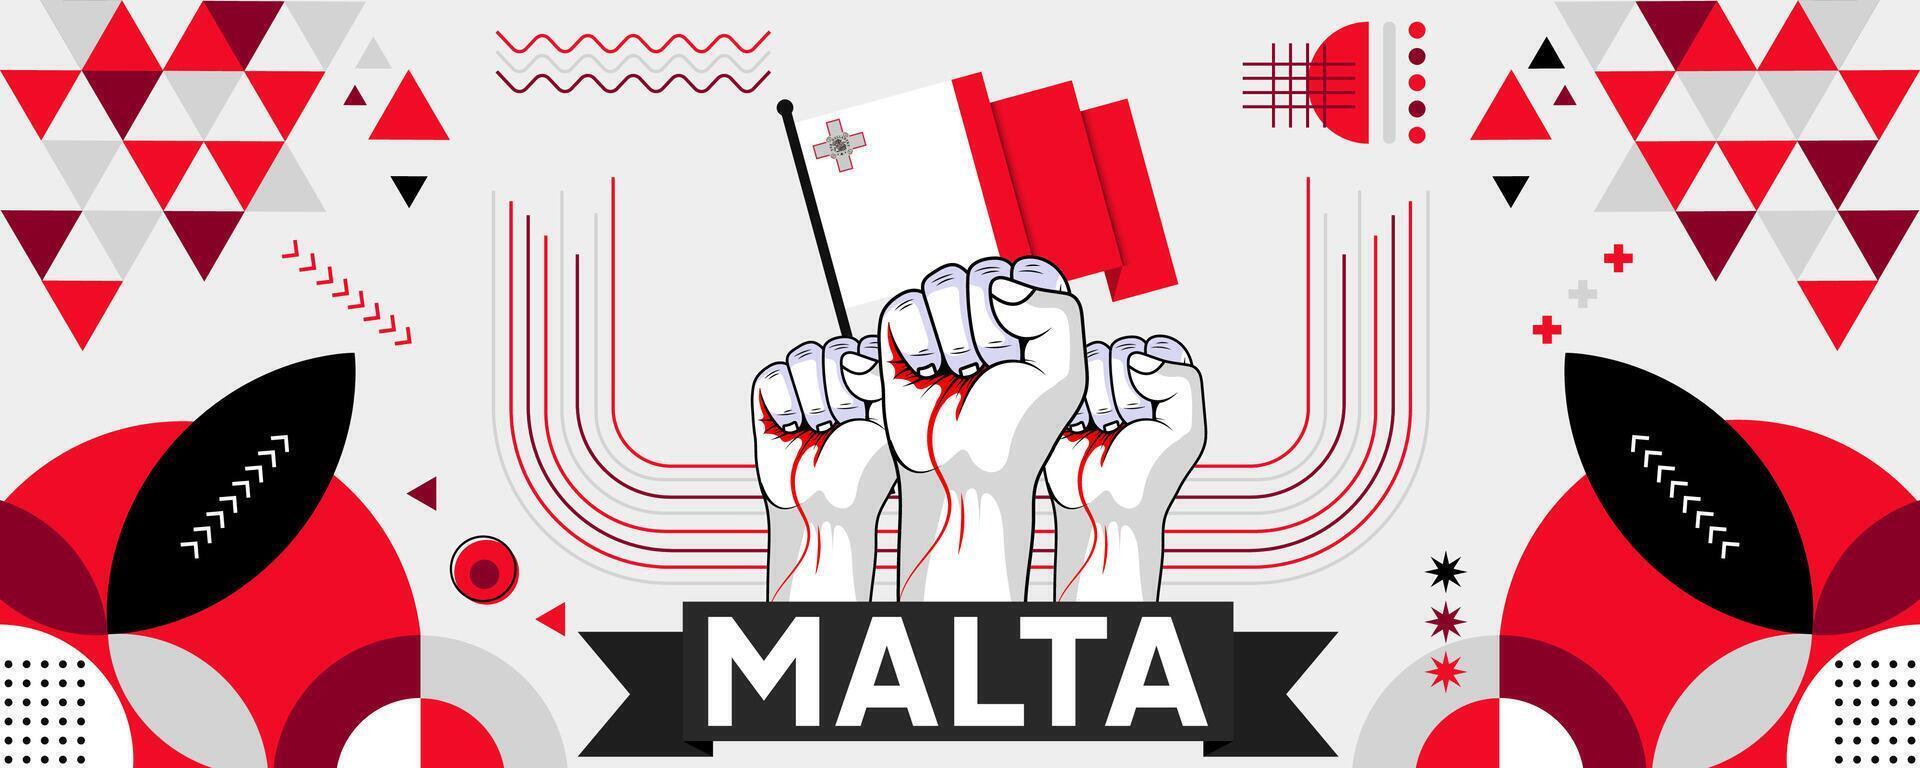 malta nationell eller oberoende dag baner för Land firande. flagga av malta med Uppfostrad nävar. modern retro design med typorgaphy abstrakt geometrisk ikoner. vektor illustration.